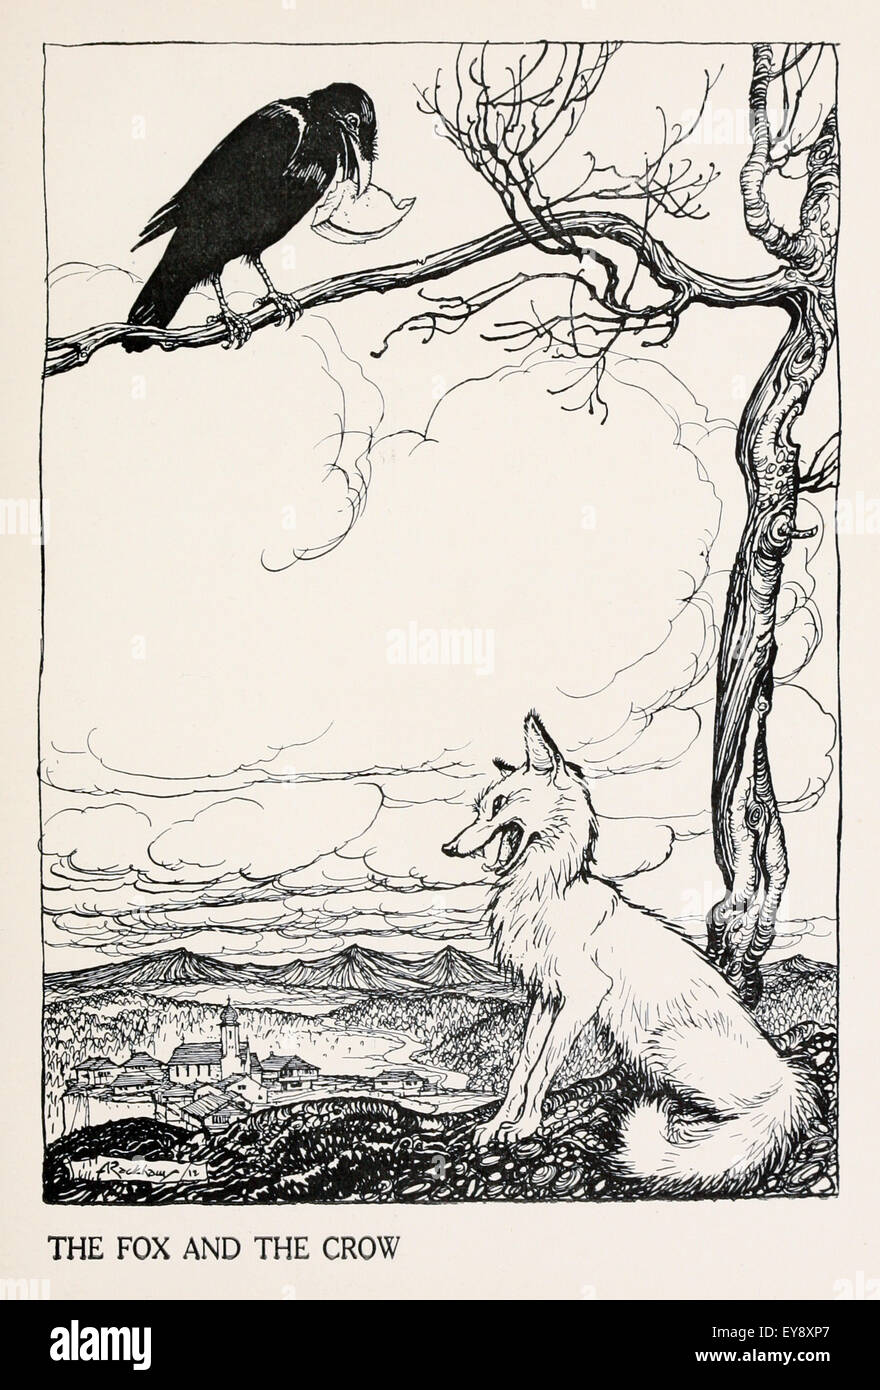 "Der Fuchs und der Rabe" Fabel von Aesop (ca. 600). In der Fabel hat eine Krähe fand ein Stück Käse und zog sich einen Zweig zu essen. Ein Fuchs, wollen es für sich selbst, schmeichelt die Krähe, nannte es schön und Frage mich, ob seine Stimme so süß ist zu entsprechen. Wenn es aus einem Caw lässt, der Käse fällt und ist von der Fuchs verschlungen. Moral: Hören Sie nicht auf Schmeichelei. Illustration von Arthur Rackham (1867-1939). Siehe Beschreibung für mehr Informationen. Stockfoto